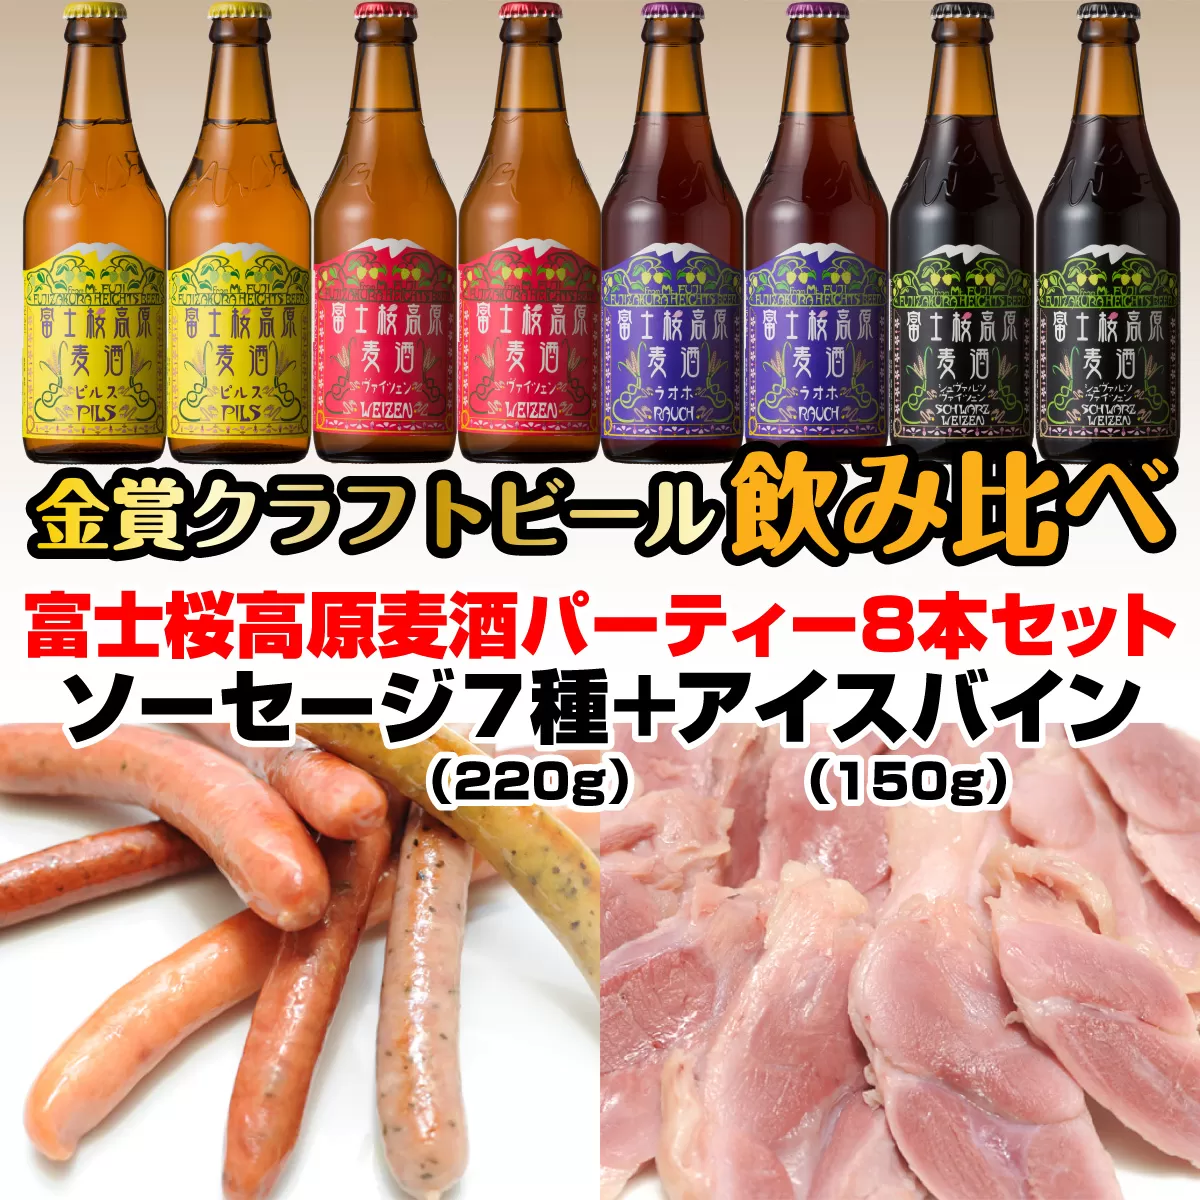 富士桜高原麦酒パーティー8本セット 金賞クラフトビール飲み比べ FAD026